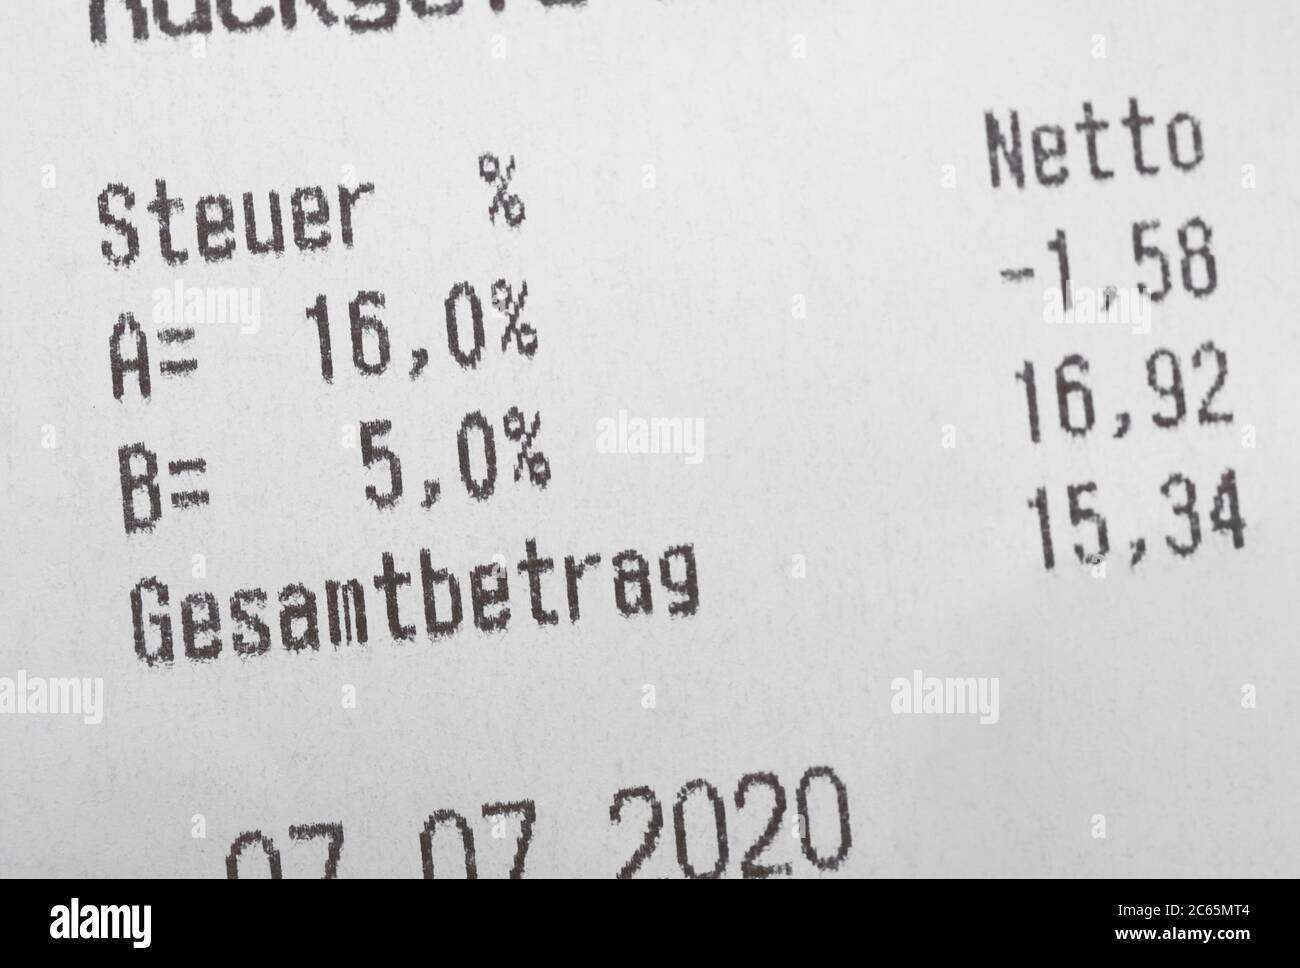 Beleg zeigt reduzierten Mehrwertsteuersatz in Deutschland - Mehrwertsteuer heißt MwSt oder Mehrwertssteuer in Deutsch - Englisch Übersetzung: Steuer bedeutet Steuer und Gesamtbeitrag bedeutet Gesamtbetrag Stockfoto